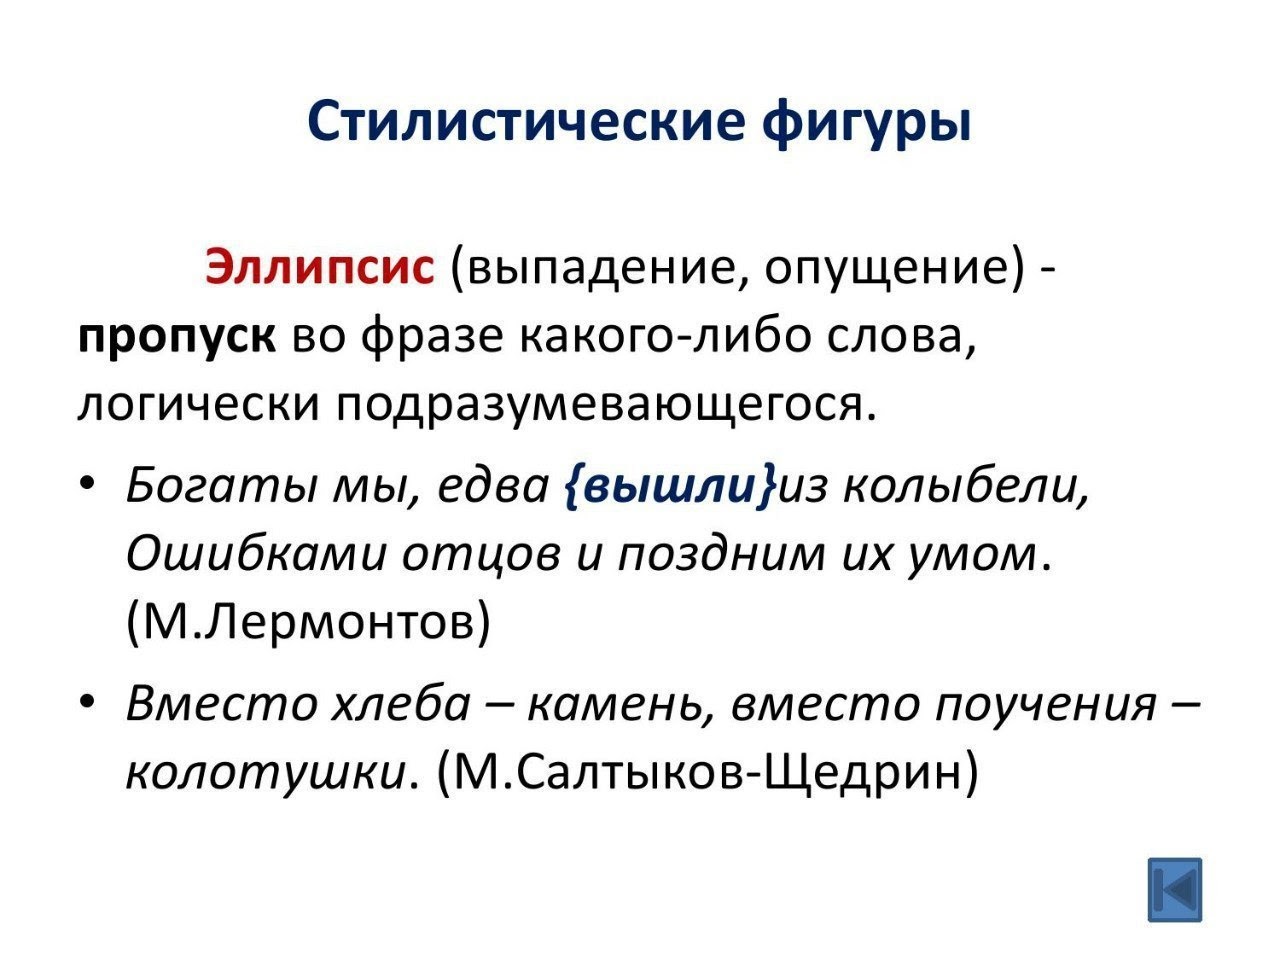 Стилистические фигуры по русскому языку эллипсис